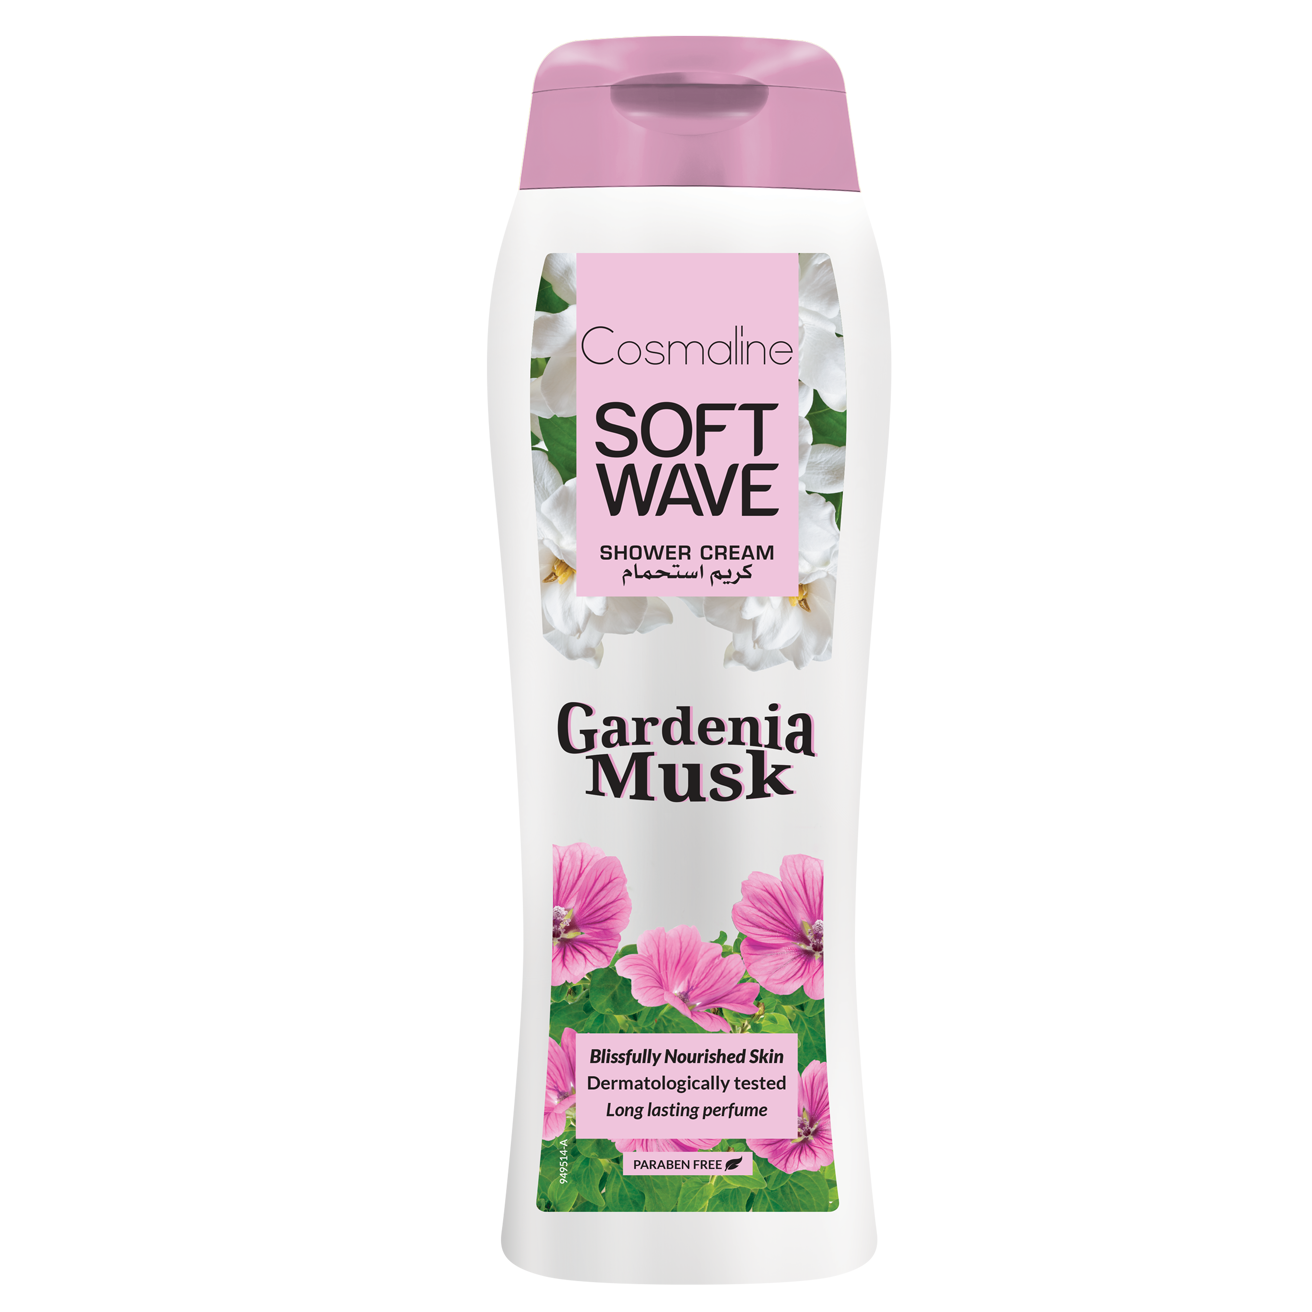 Cosmaline Soft Wave Gardenia Musk Shower Cream 400 ml - Medaid - Lebanon